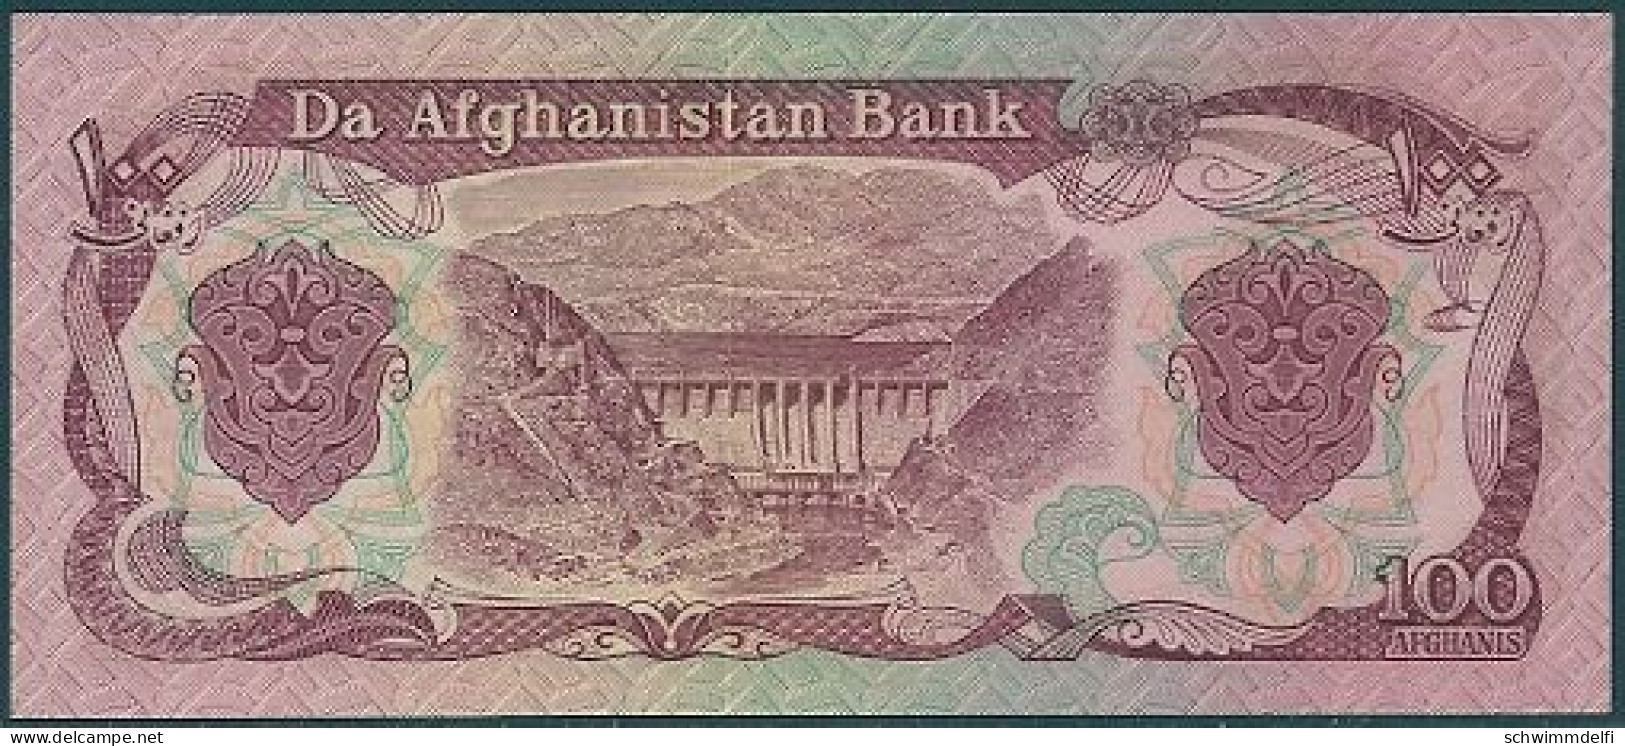 AFGHANISTAN - 100 AFGHANIS 1979 - SIN CIRCULAR - UNZIRKULIERT - UNCIRCULATED - Afghanistan